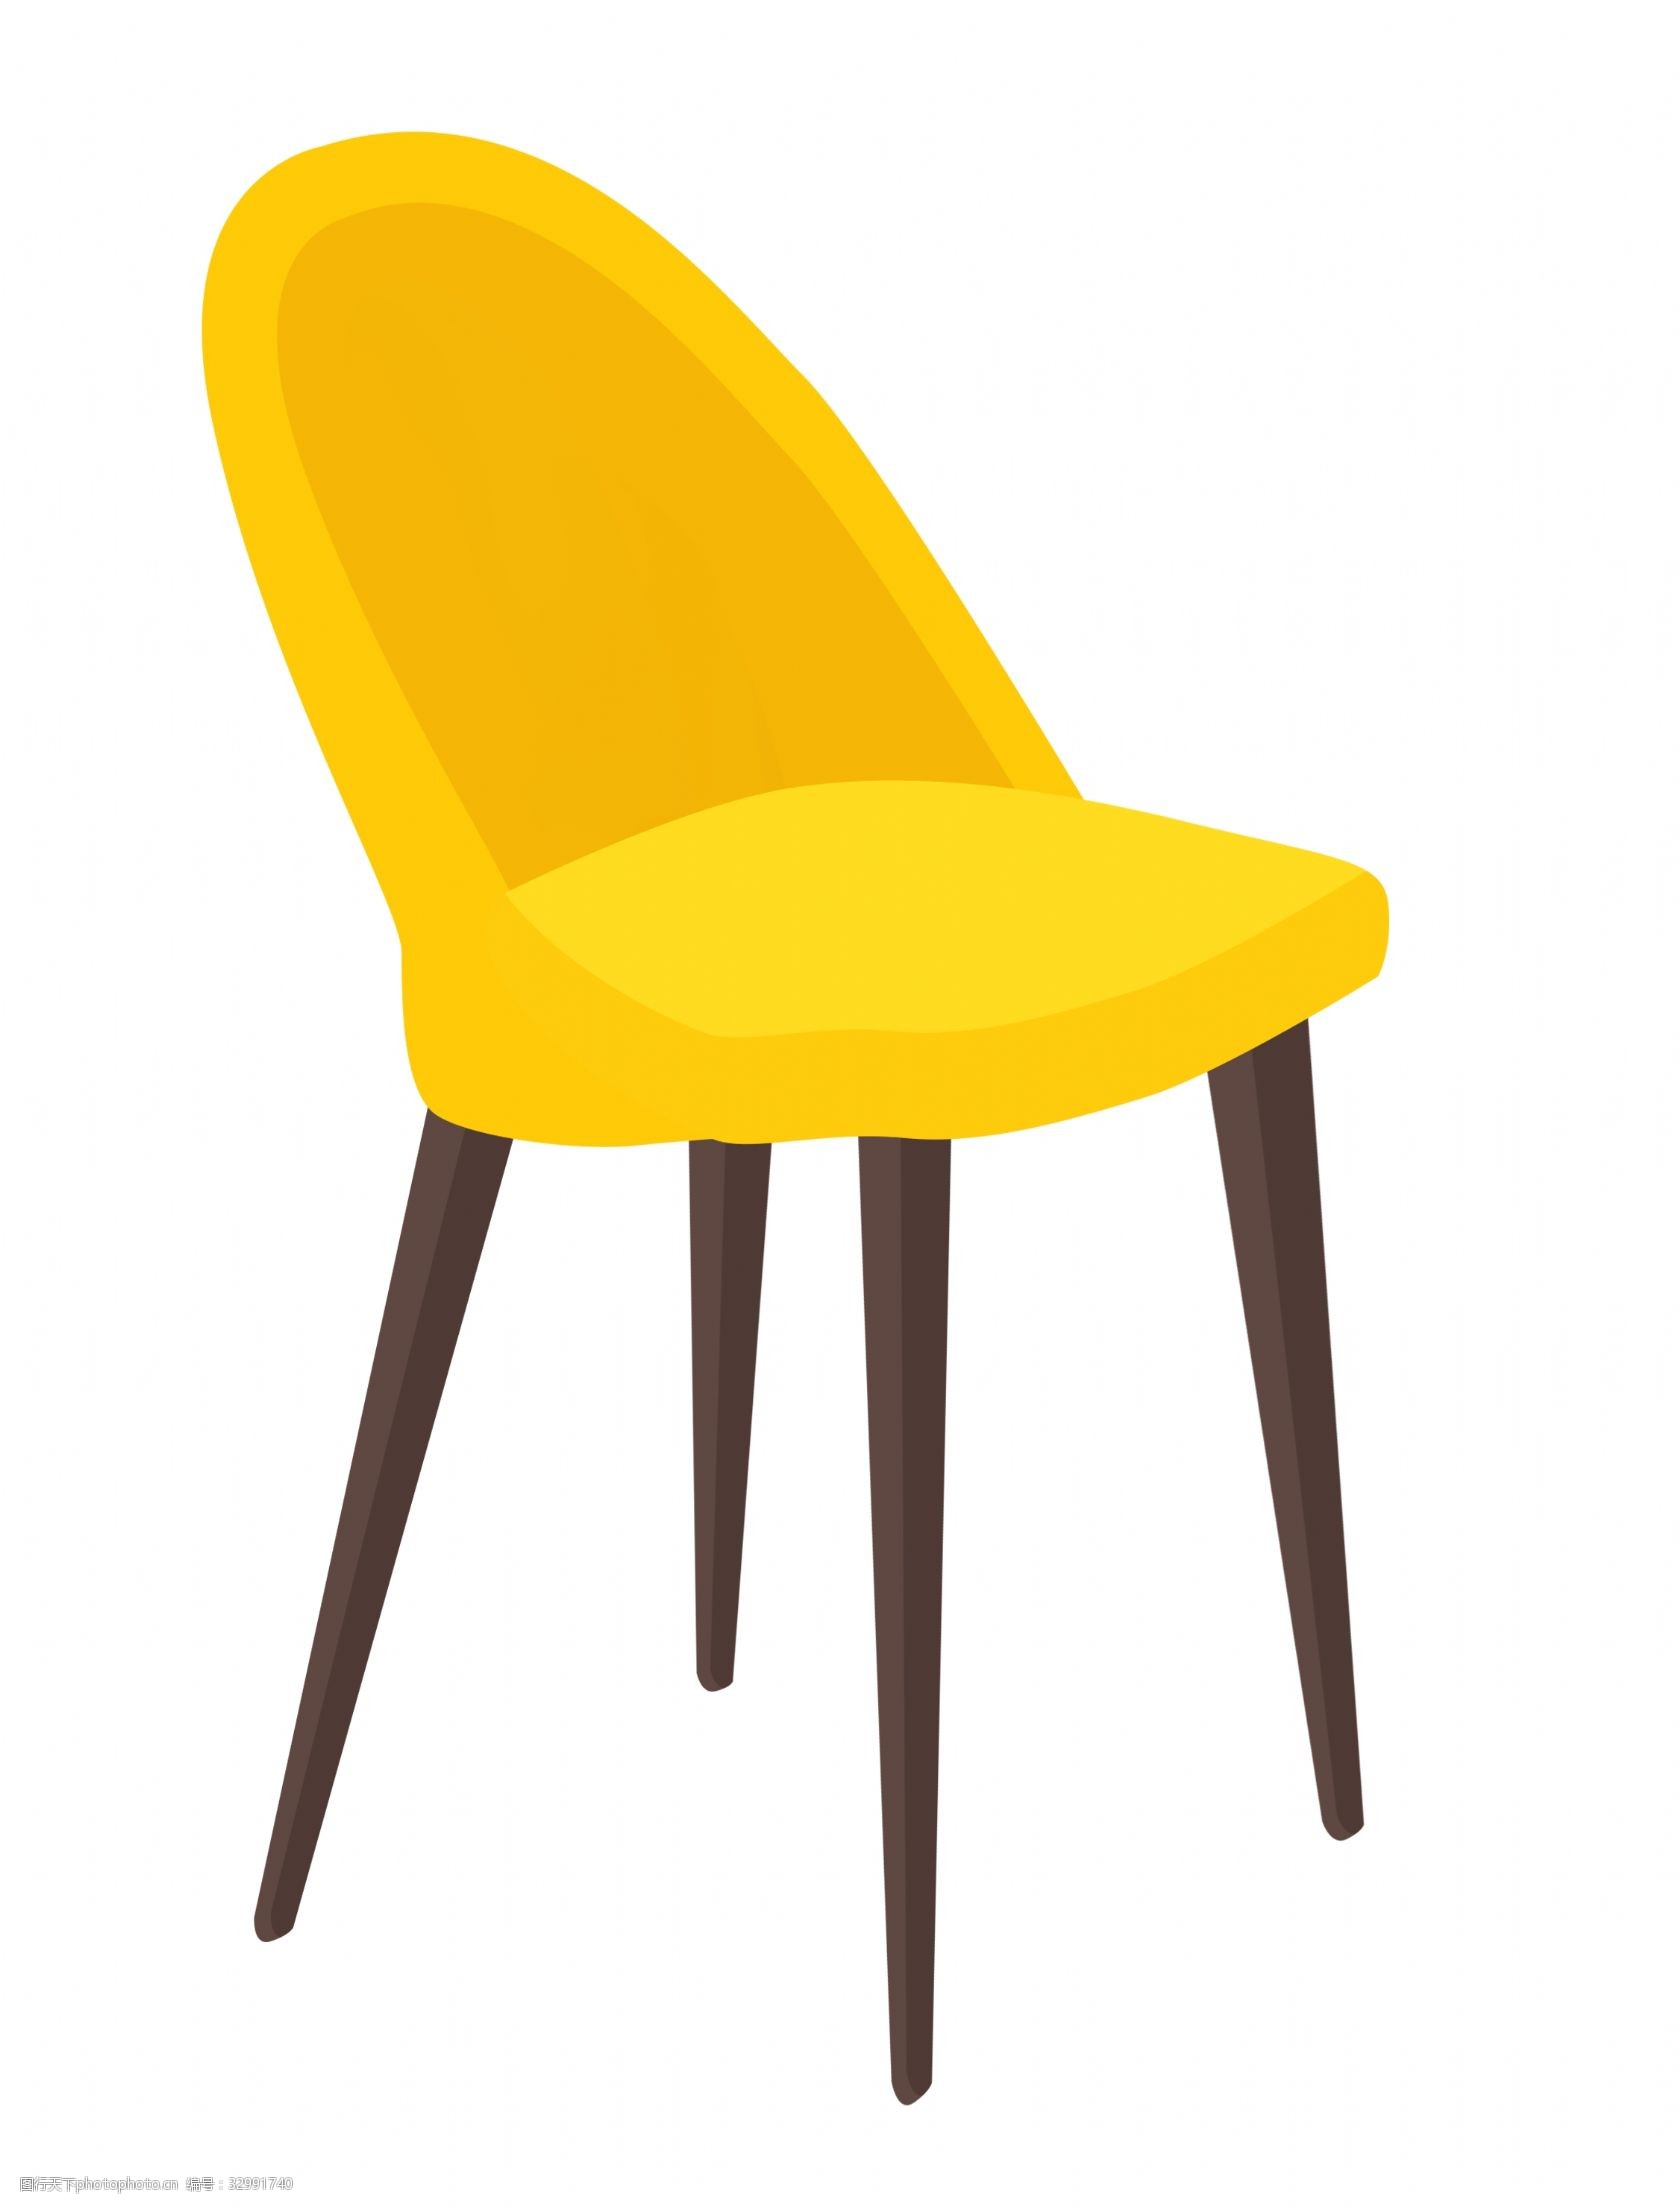 关键词:家具靠背椅子插画 椅子 卡通椅子 家具 靠背椅子 黄色椅子